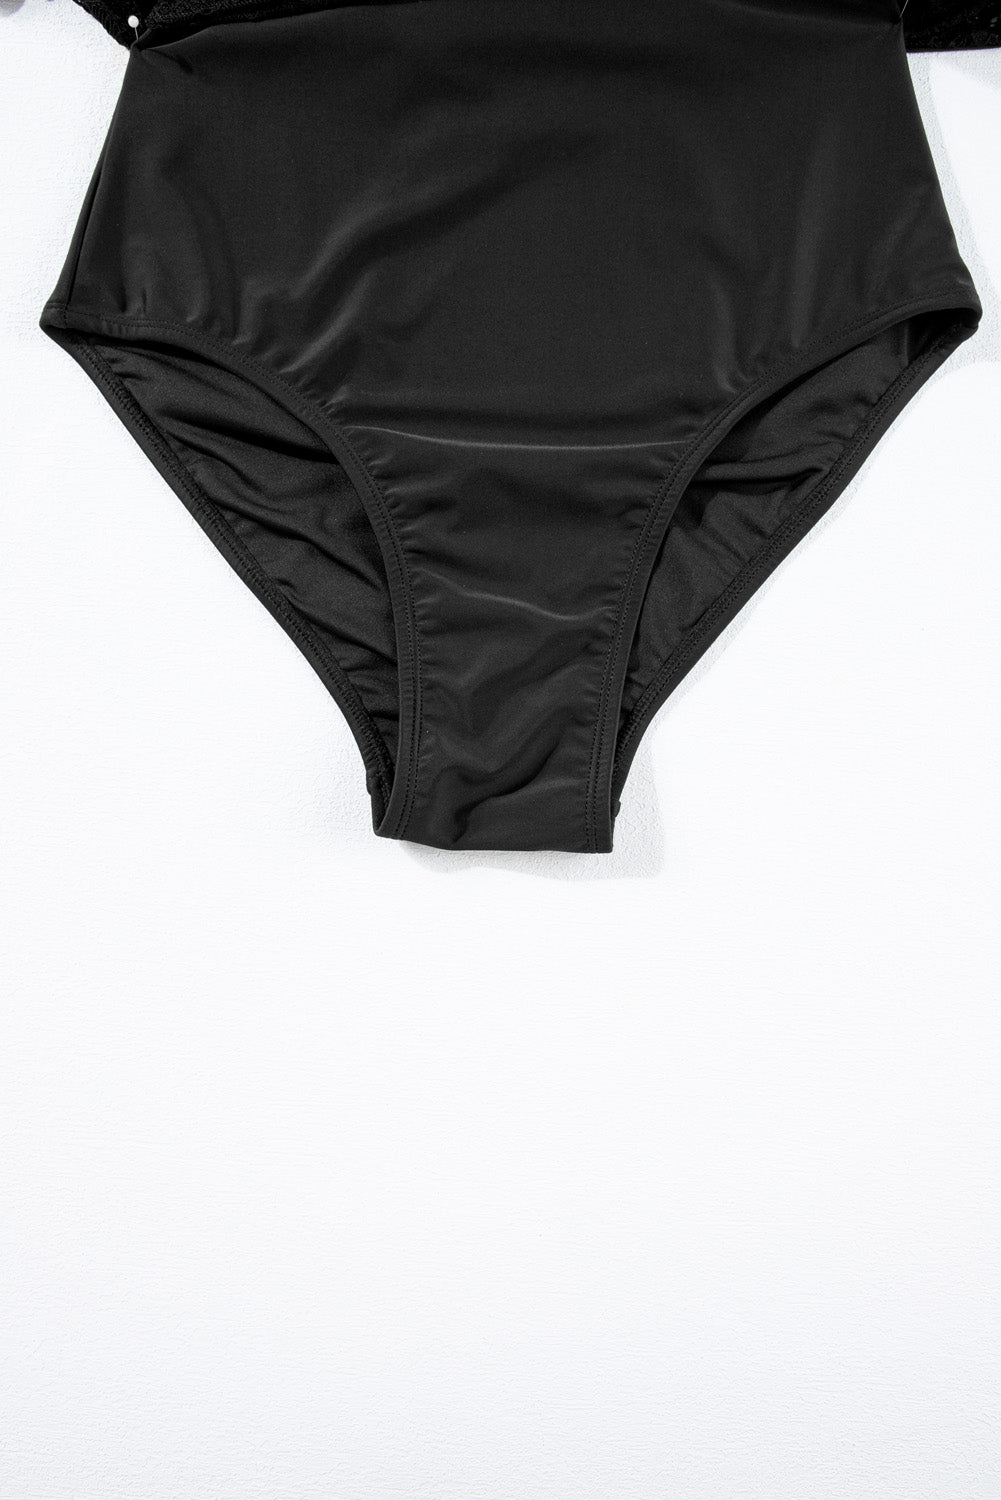 Kurzärmliger Monokini mit schwarzem Spitzen-Patchwork und Surplice-Ausschnitt